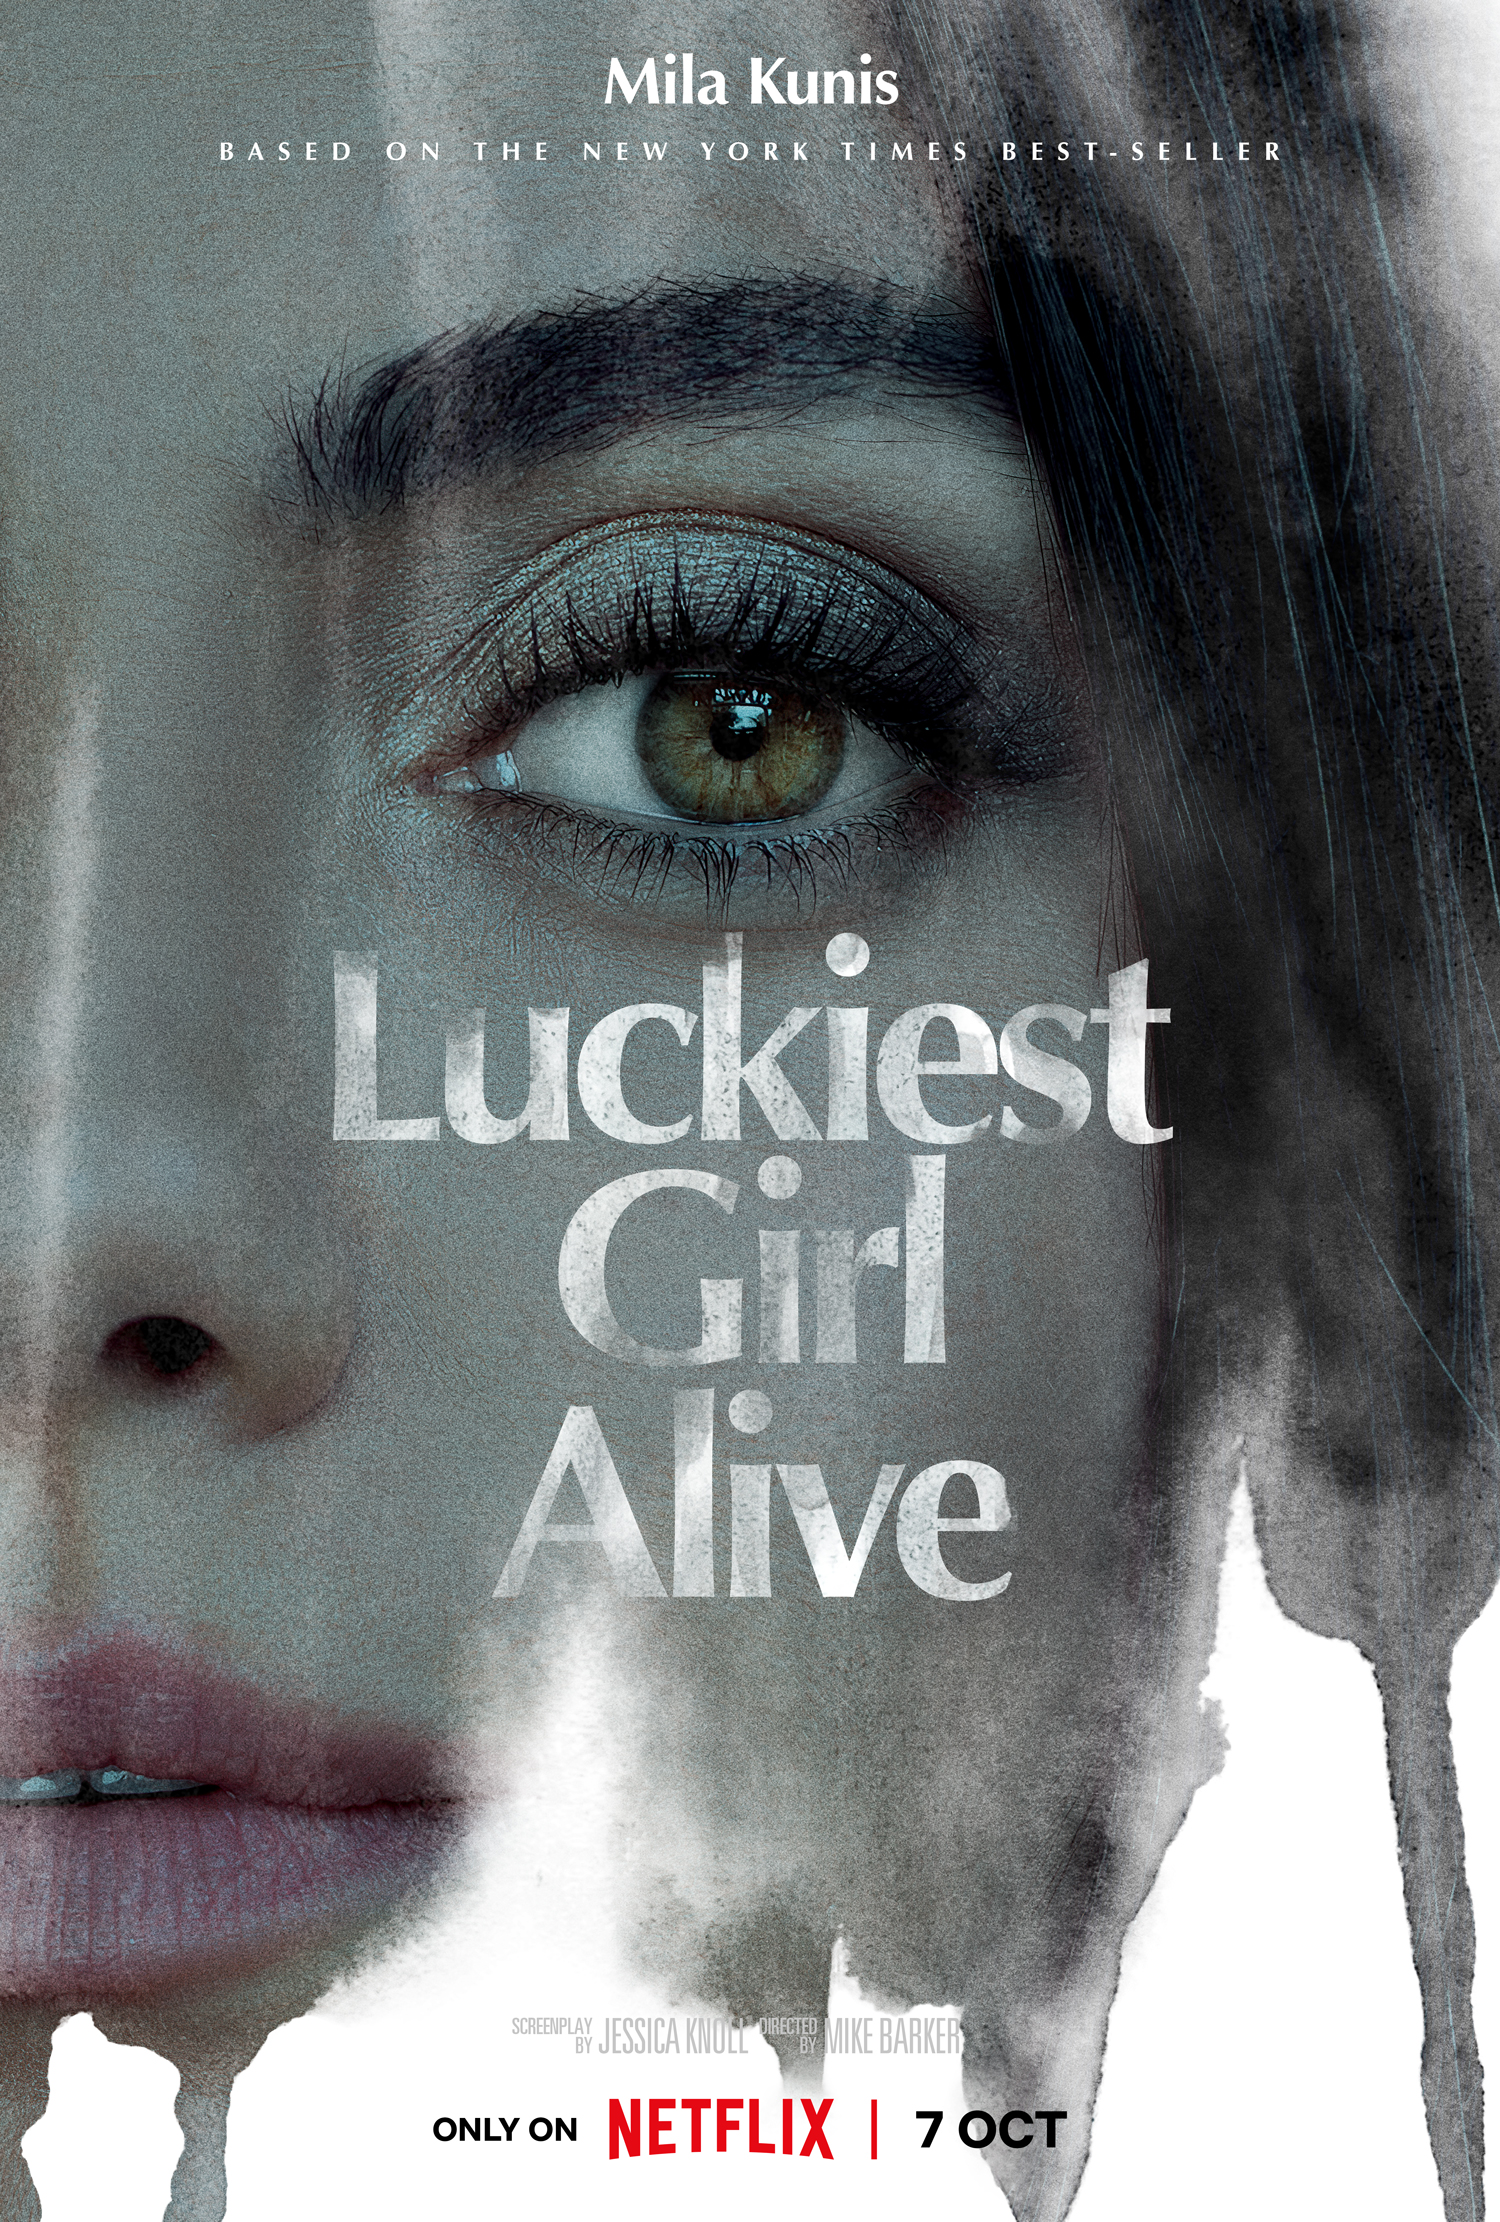 Luckiest Girl Alive on Netflix